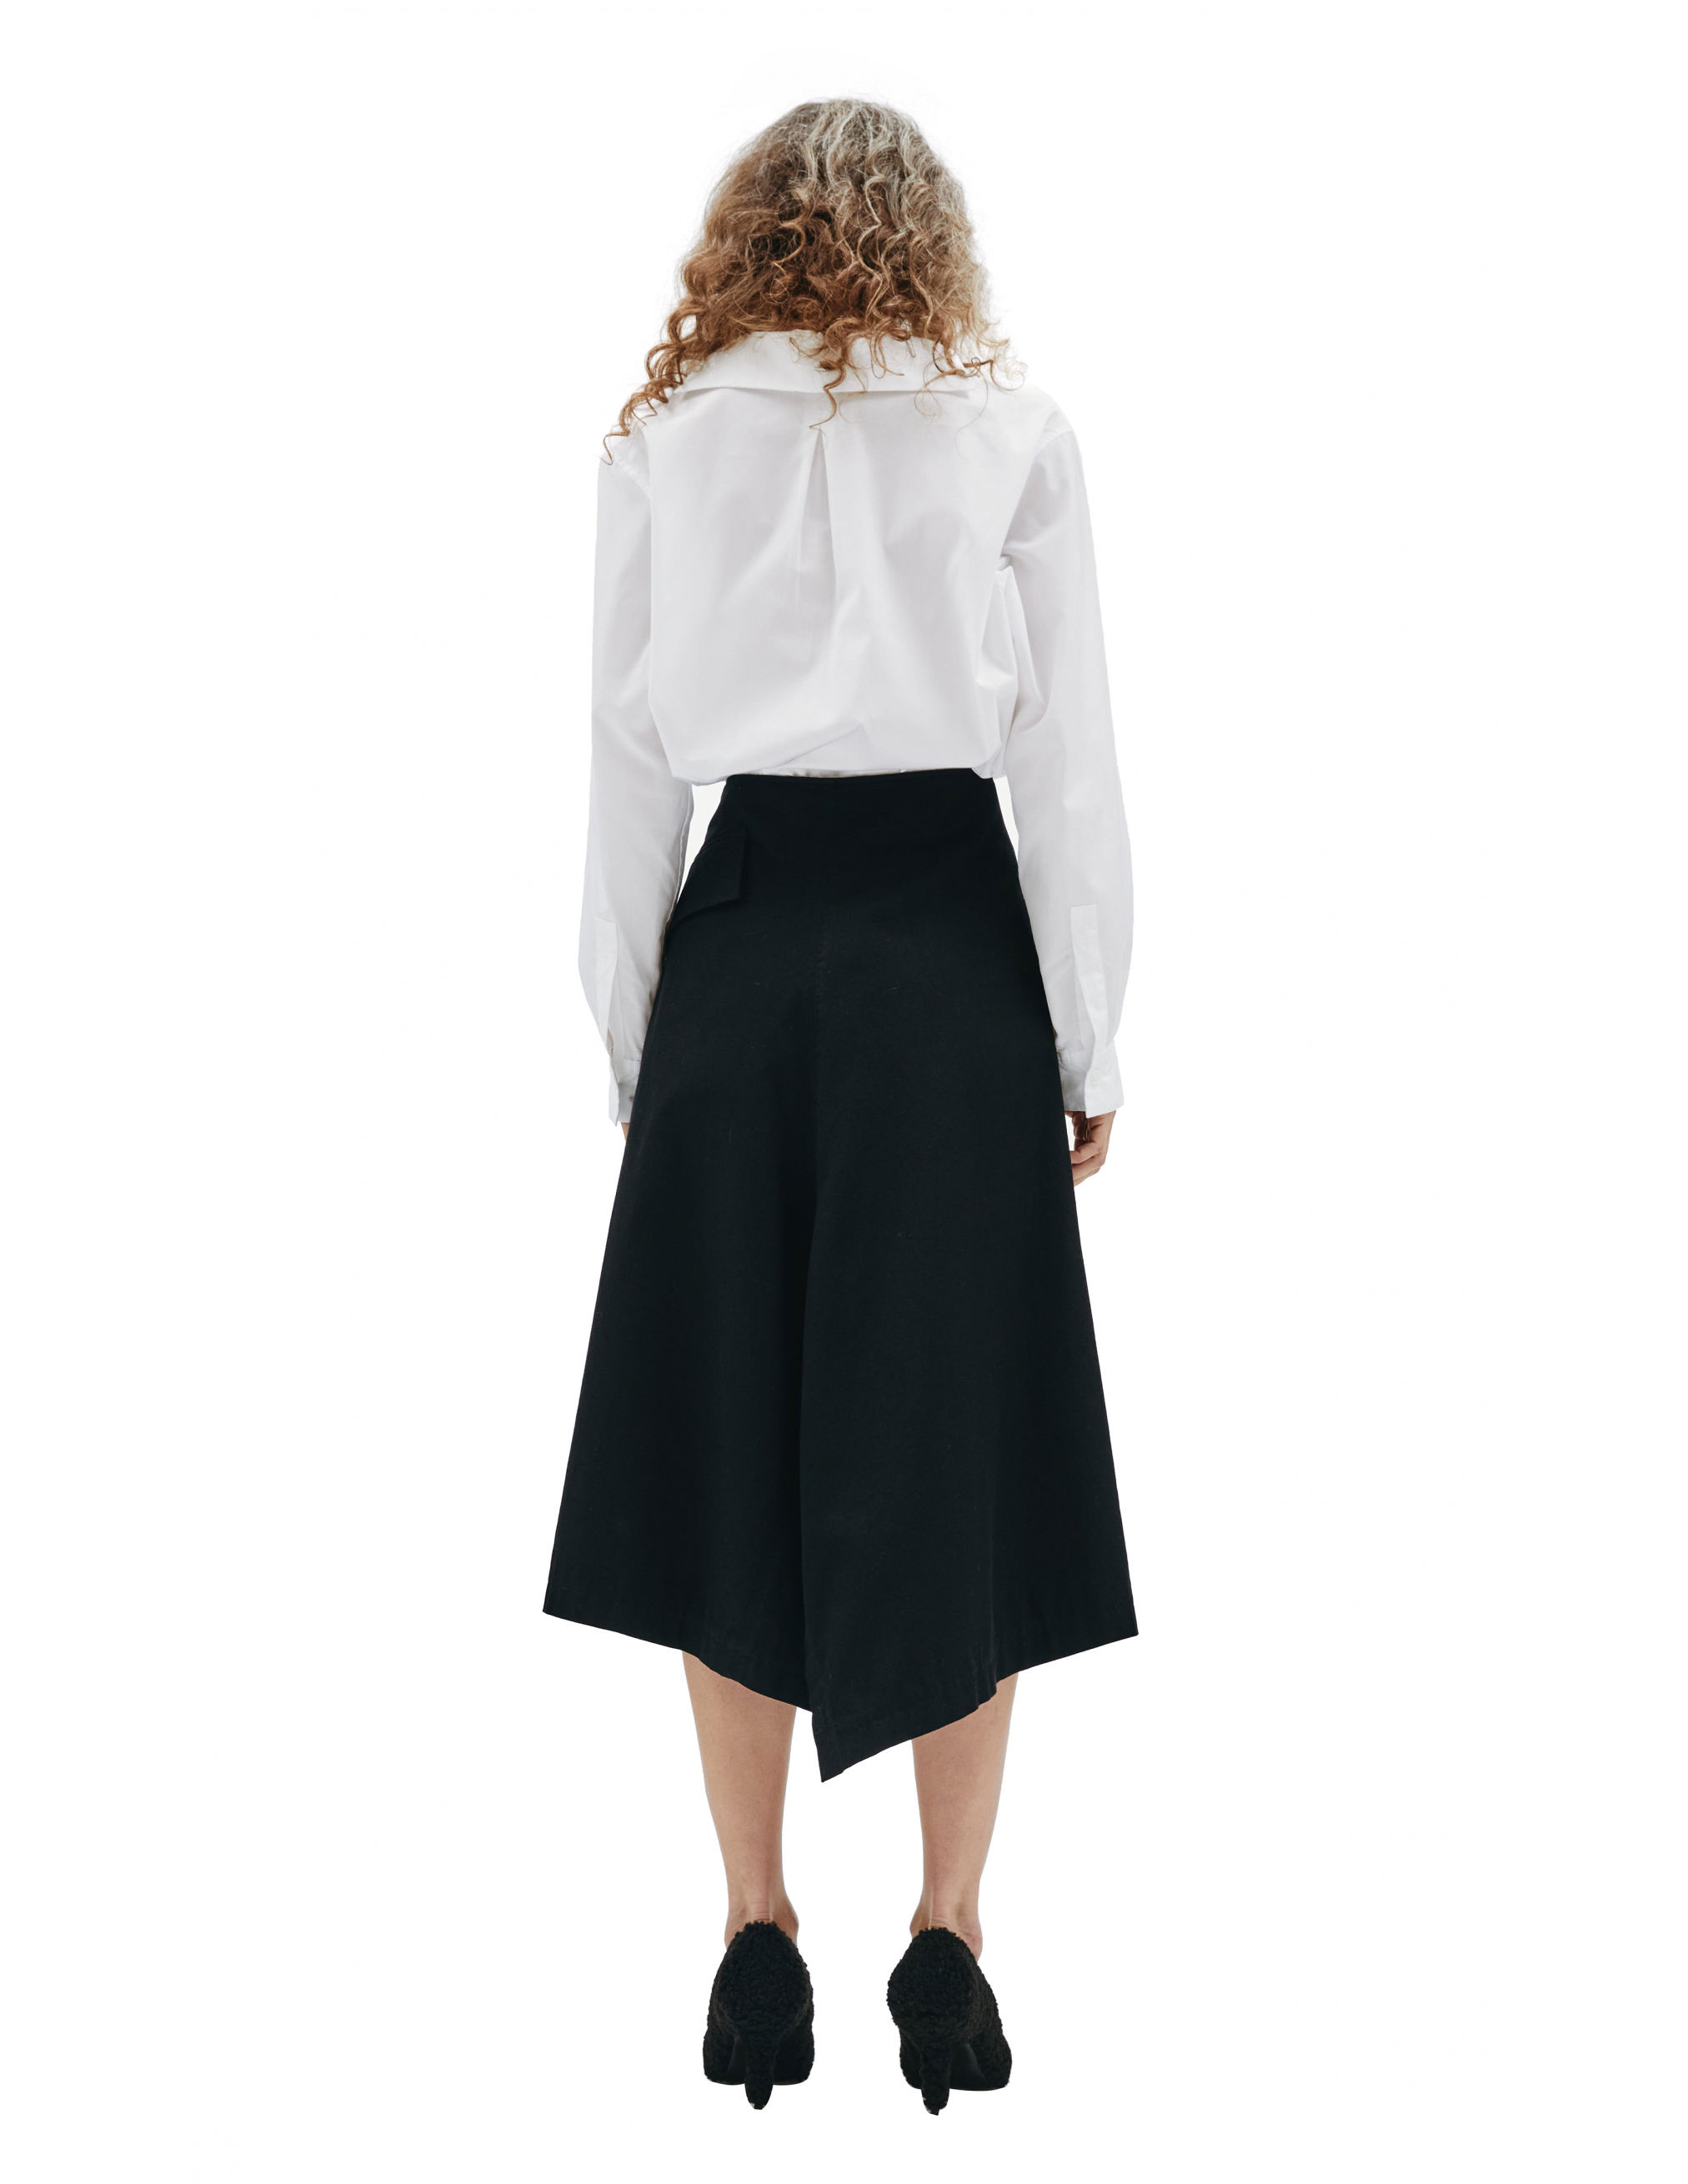 Асимметричная юбка с запахом Ys YX-S80-002-2, размер 3;1 - фото 4